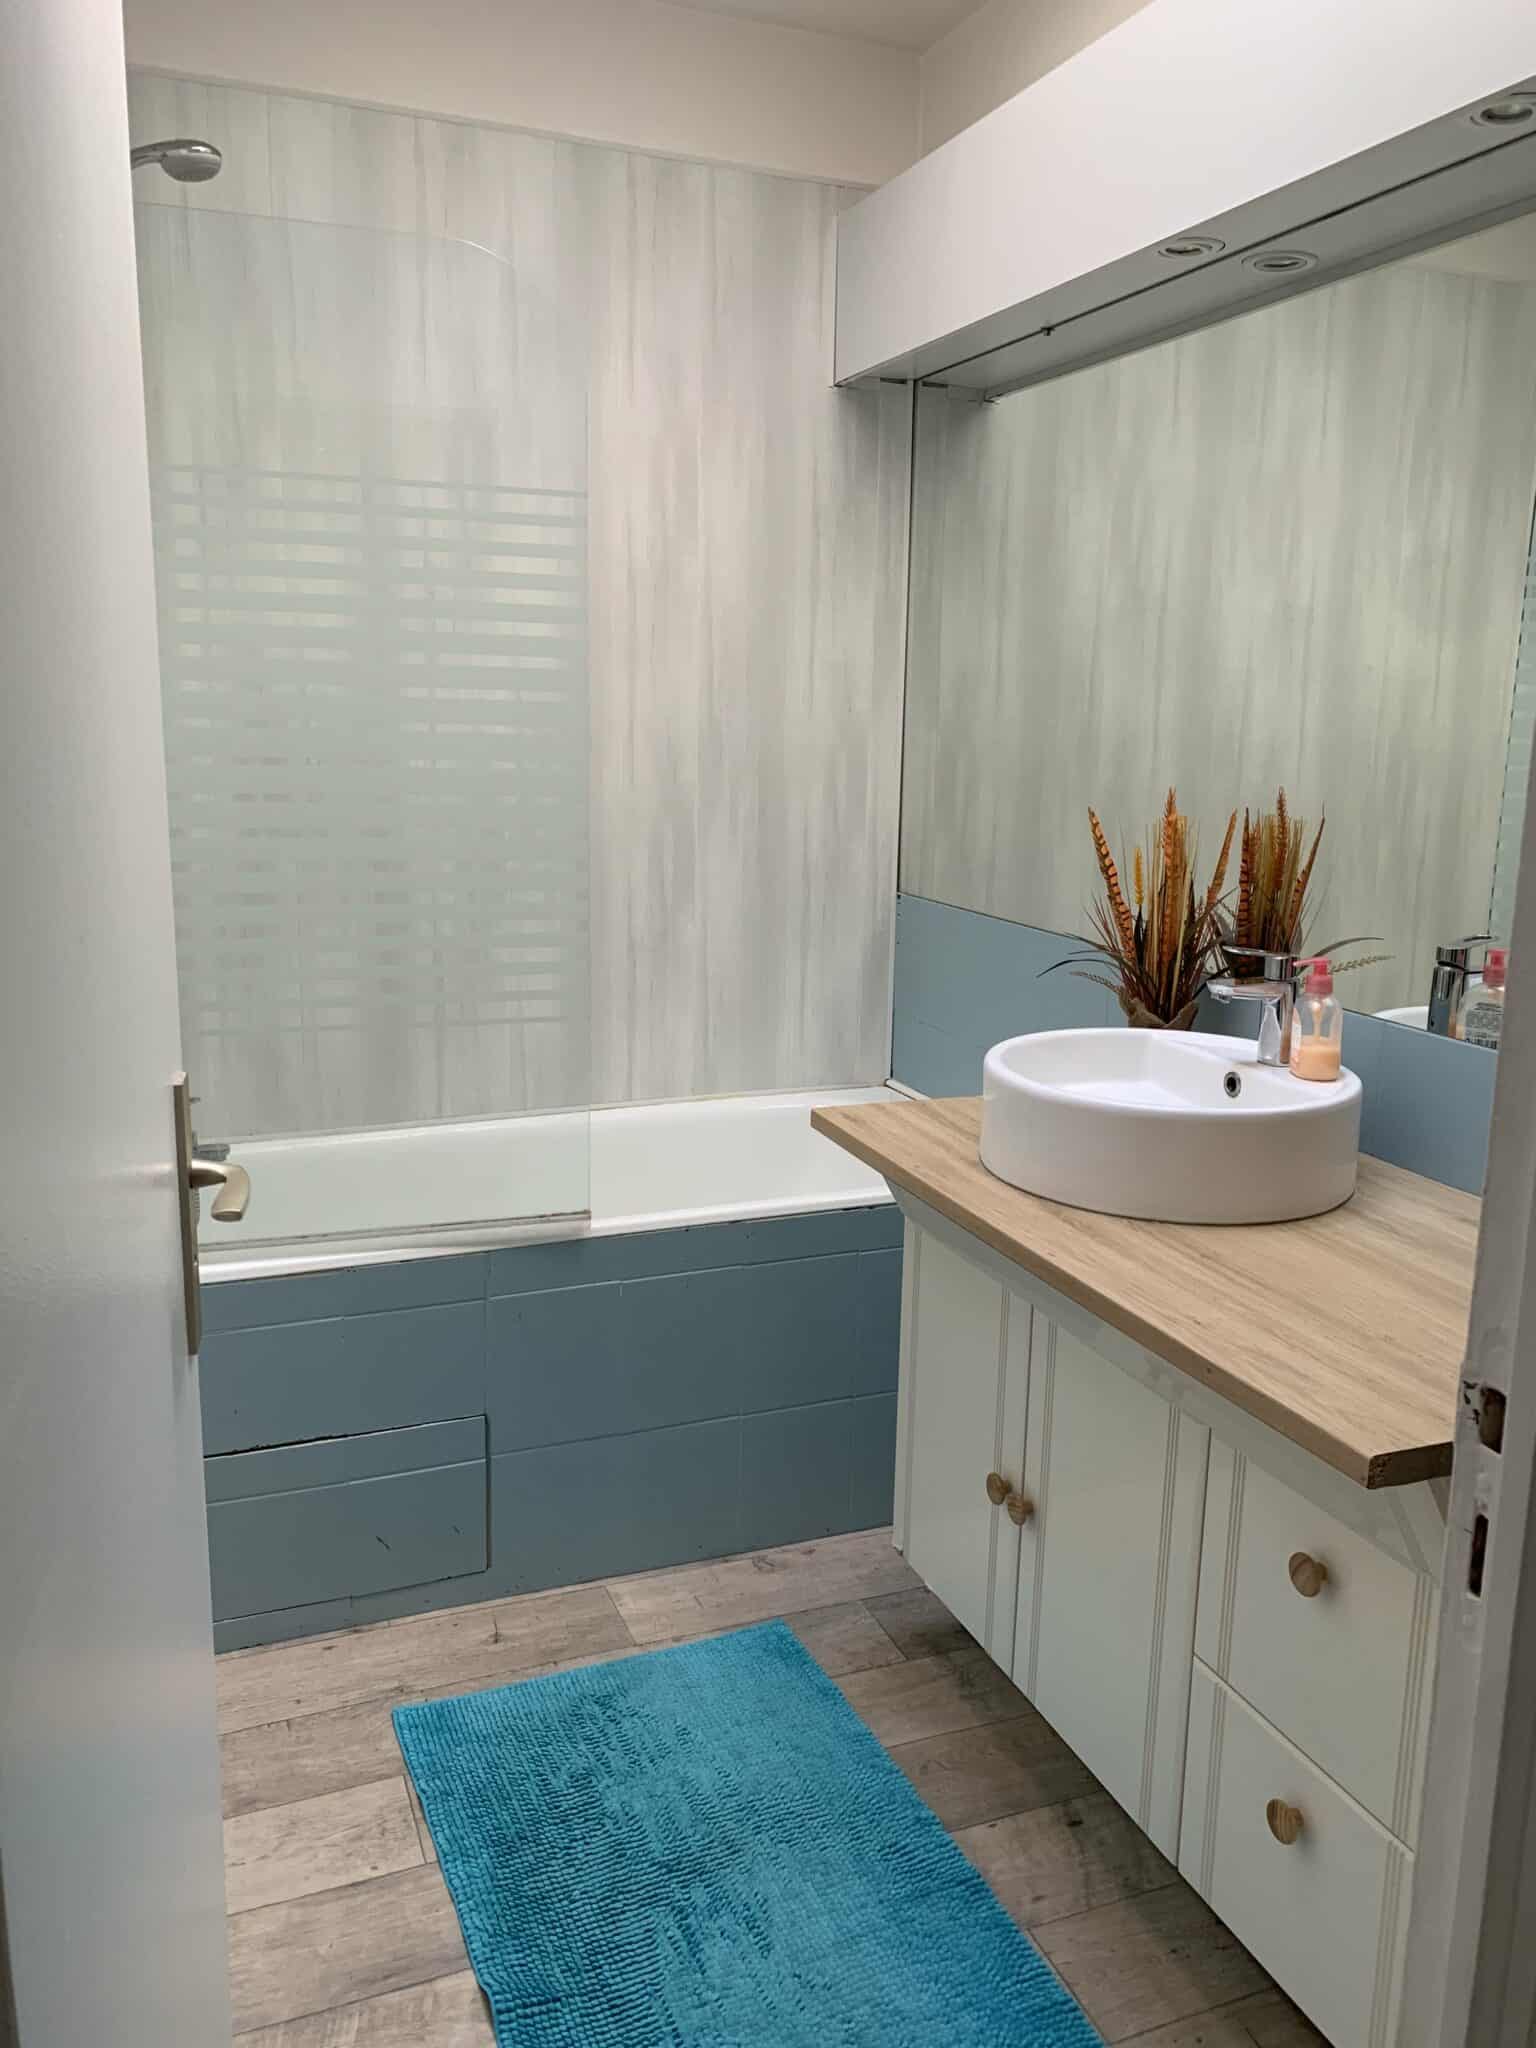 Rénovation d’une cuisine et d’une salle de bain à Vierzon - salle de bain meuble blanc